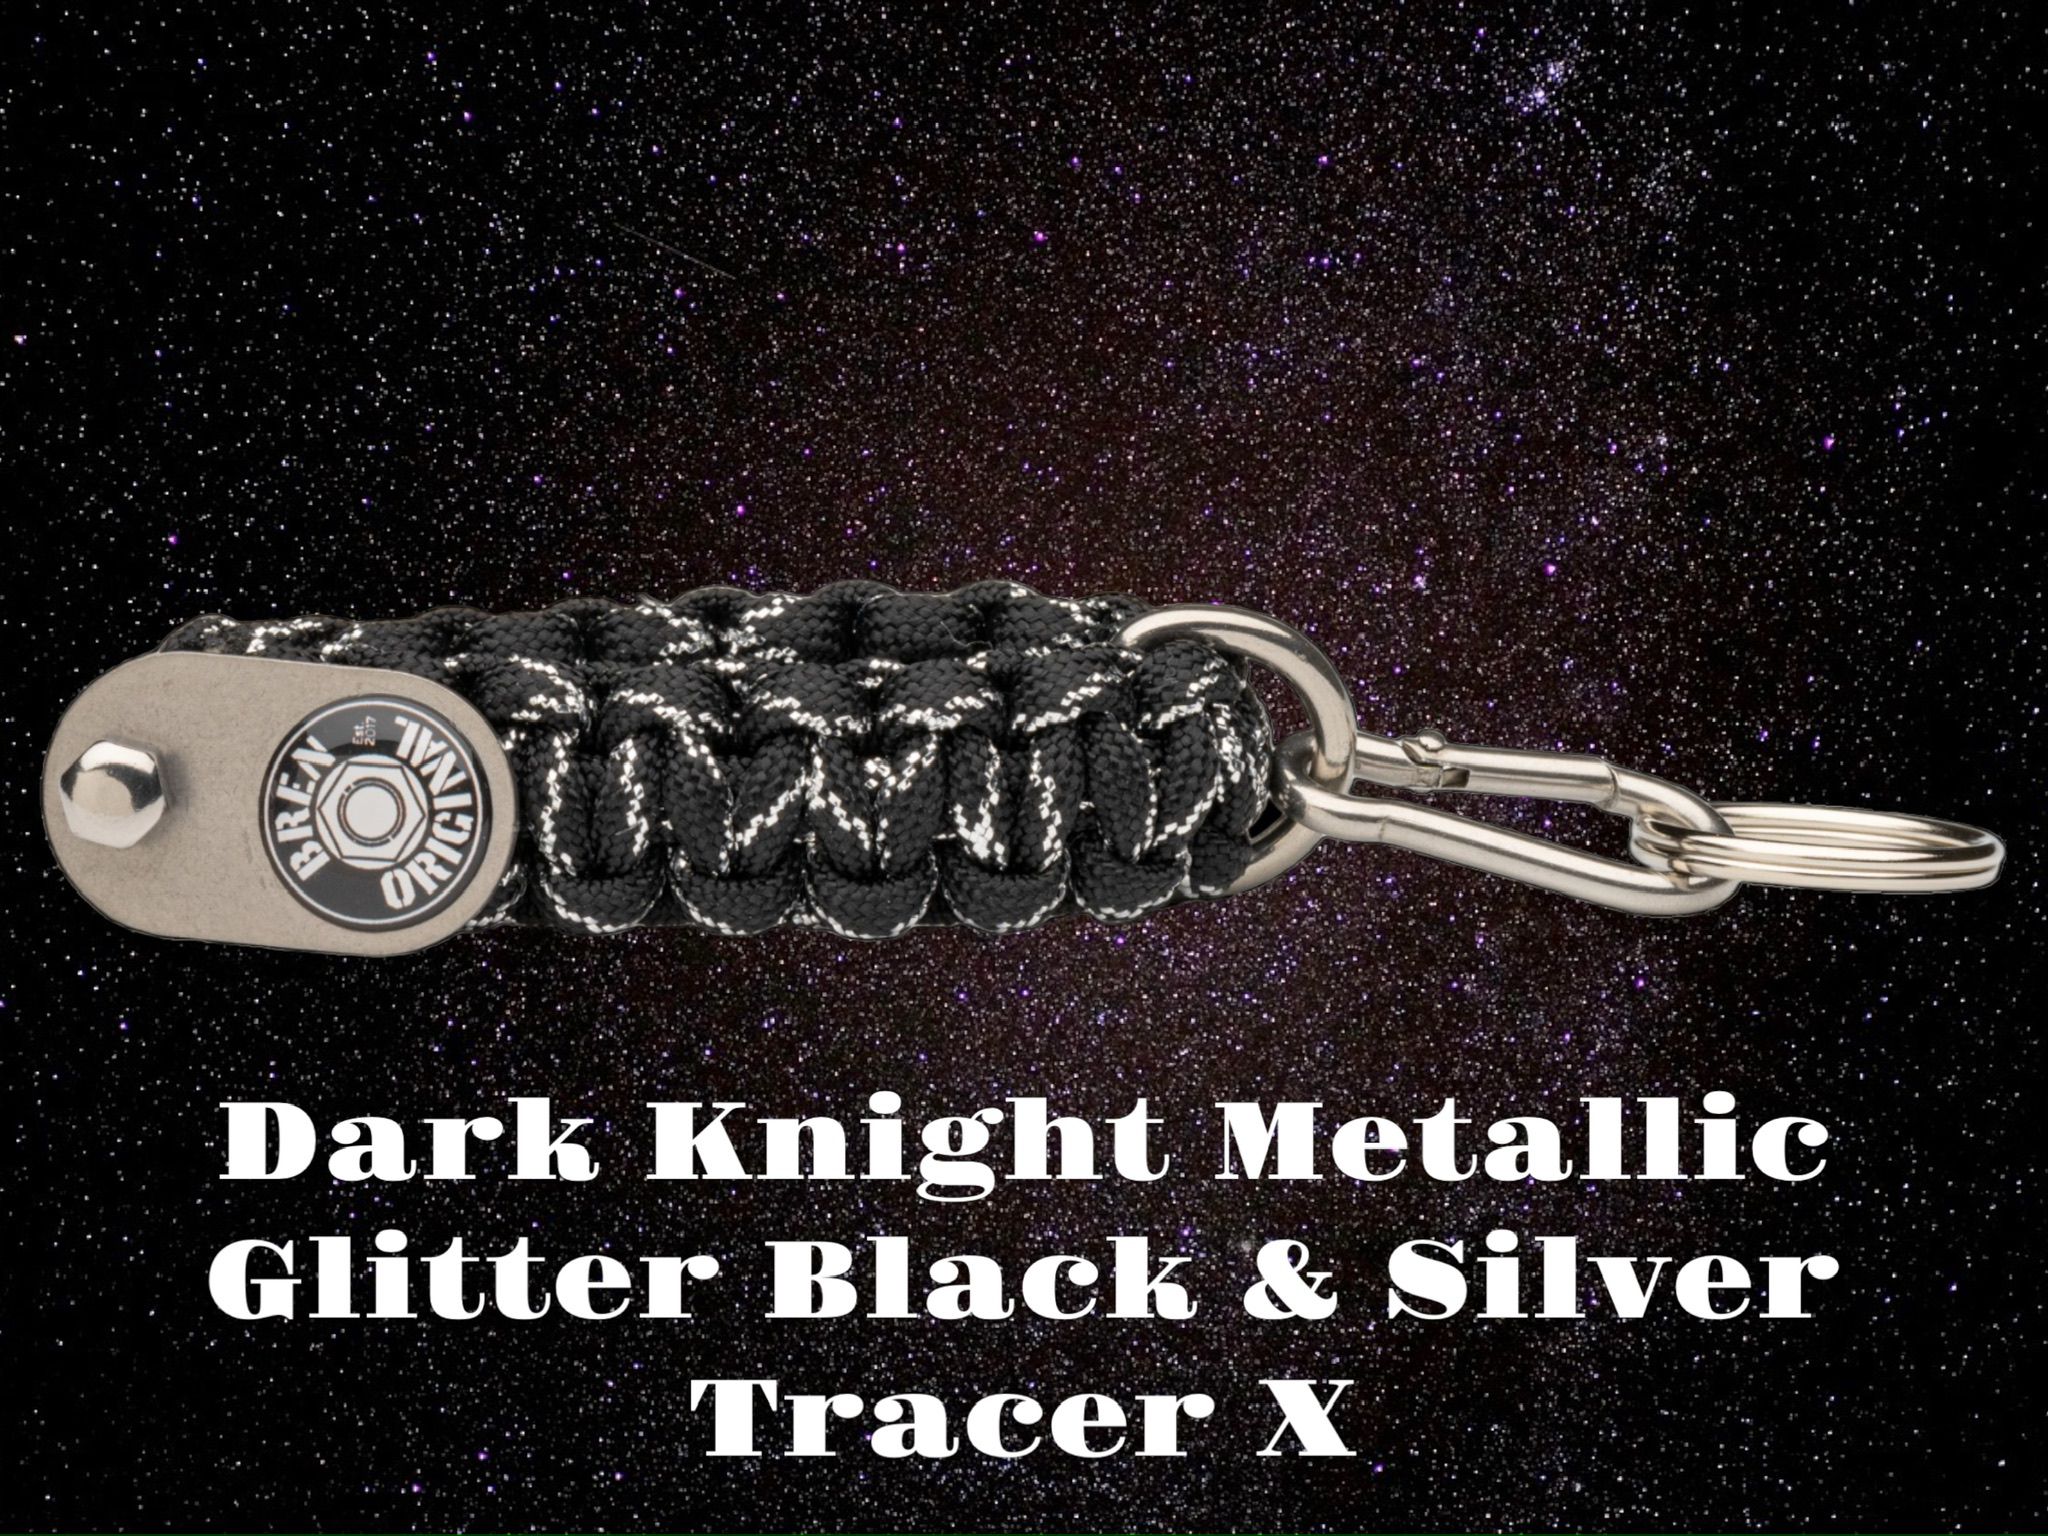 Dark Knight Metallic Glitter Black Silver TracerX